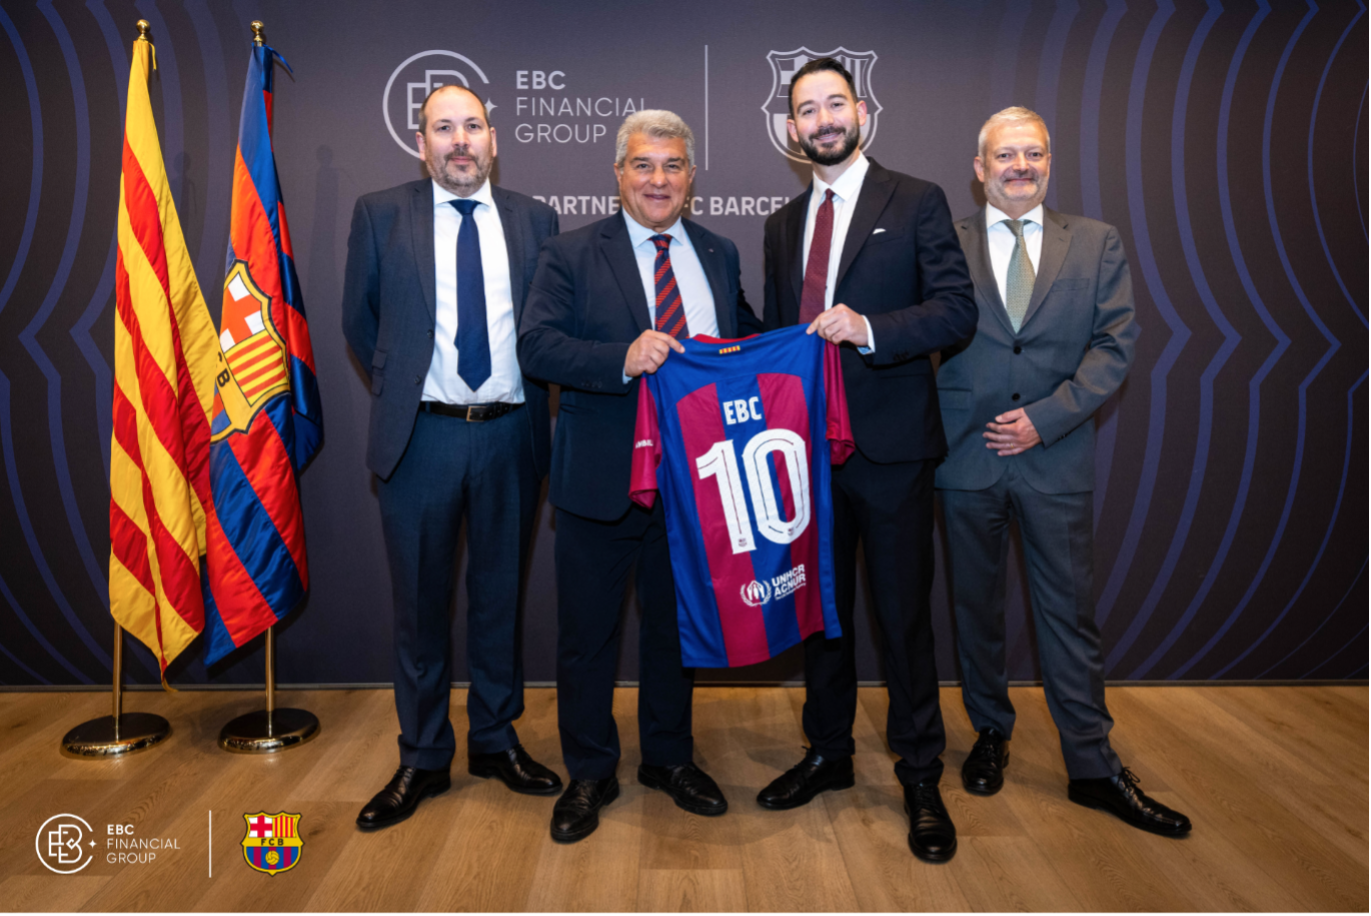 Compromisso de Aliança Estratégica: EBC Financial Group une forças com FC Barcelona